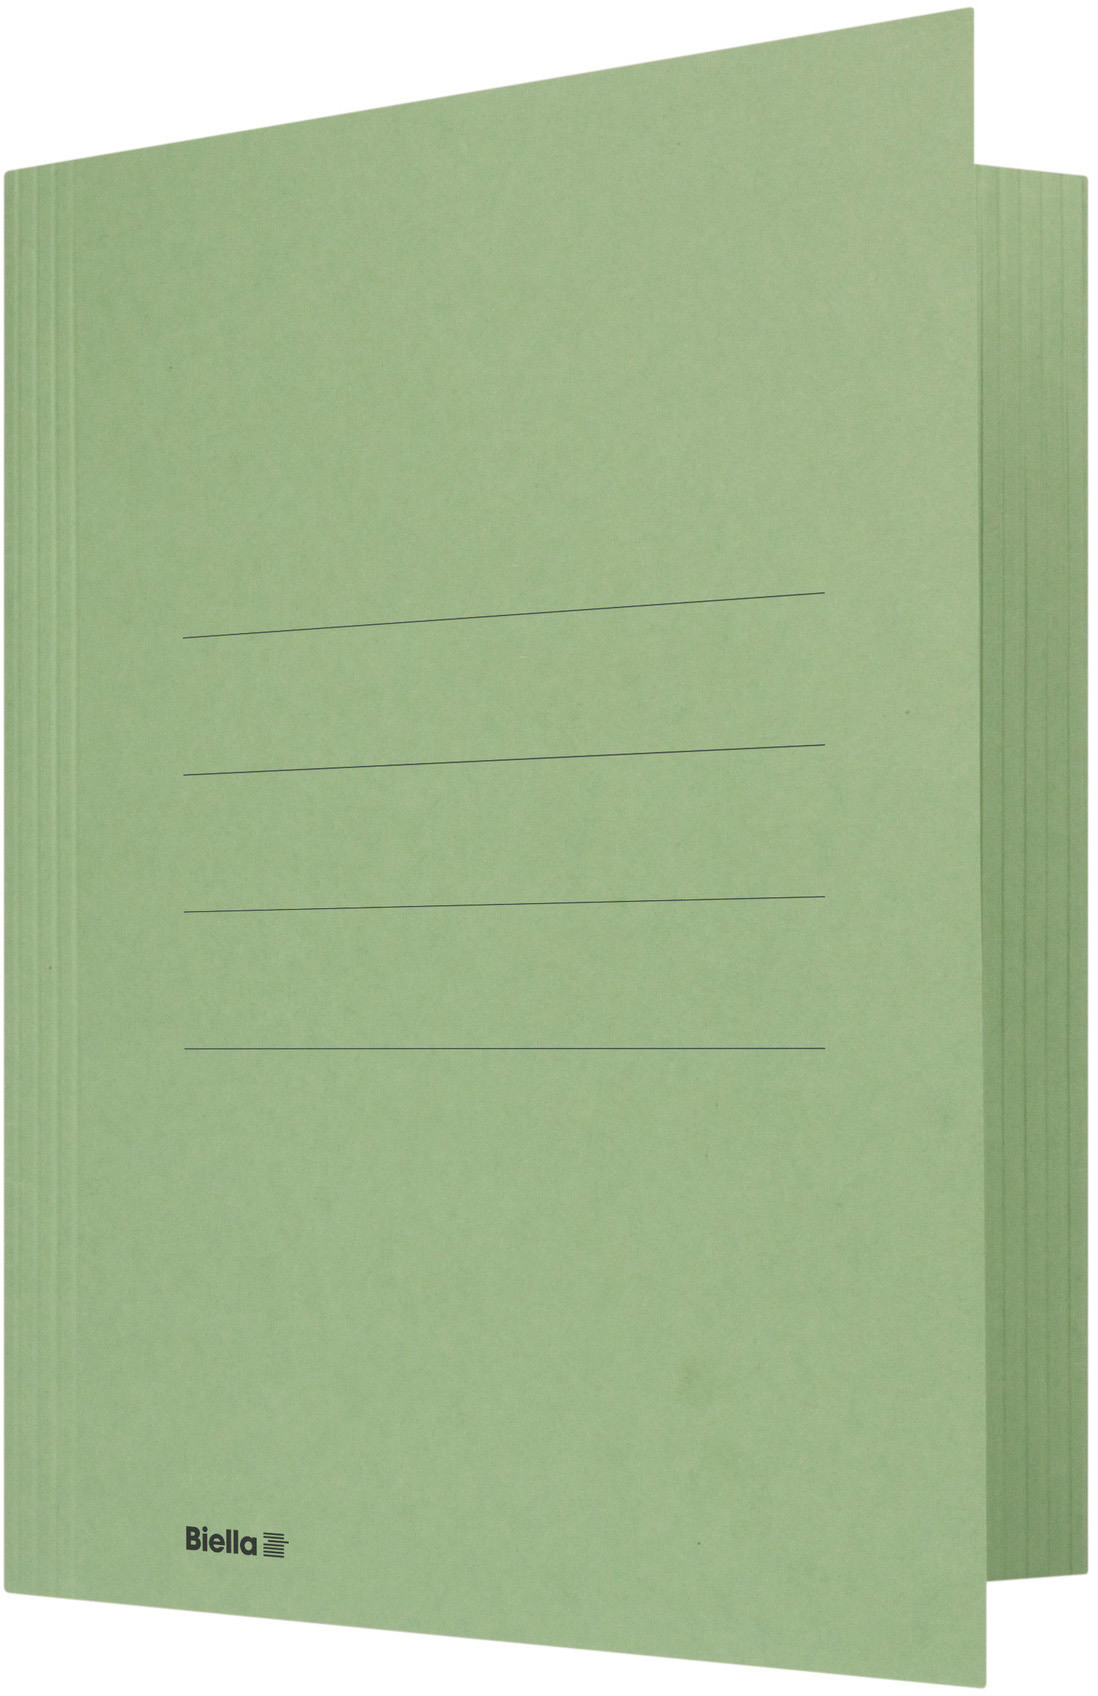 BIELLA Dossier chemise Jura 17040030U vert